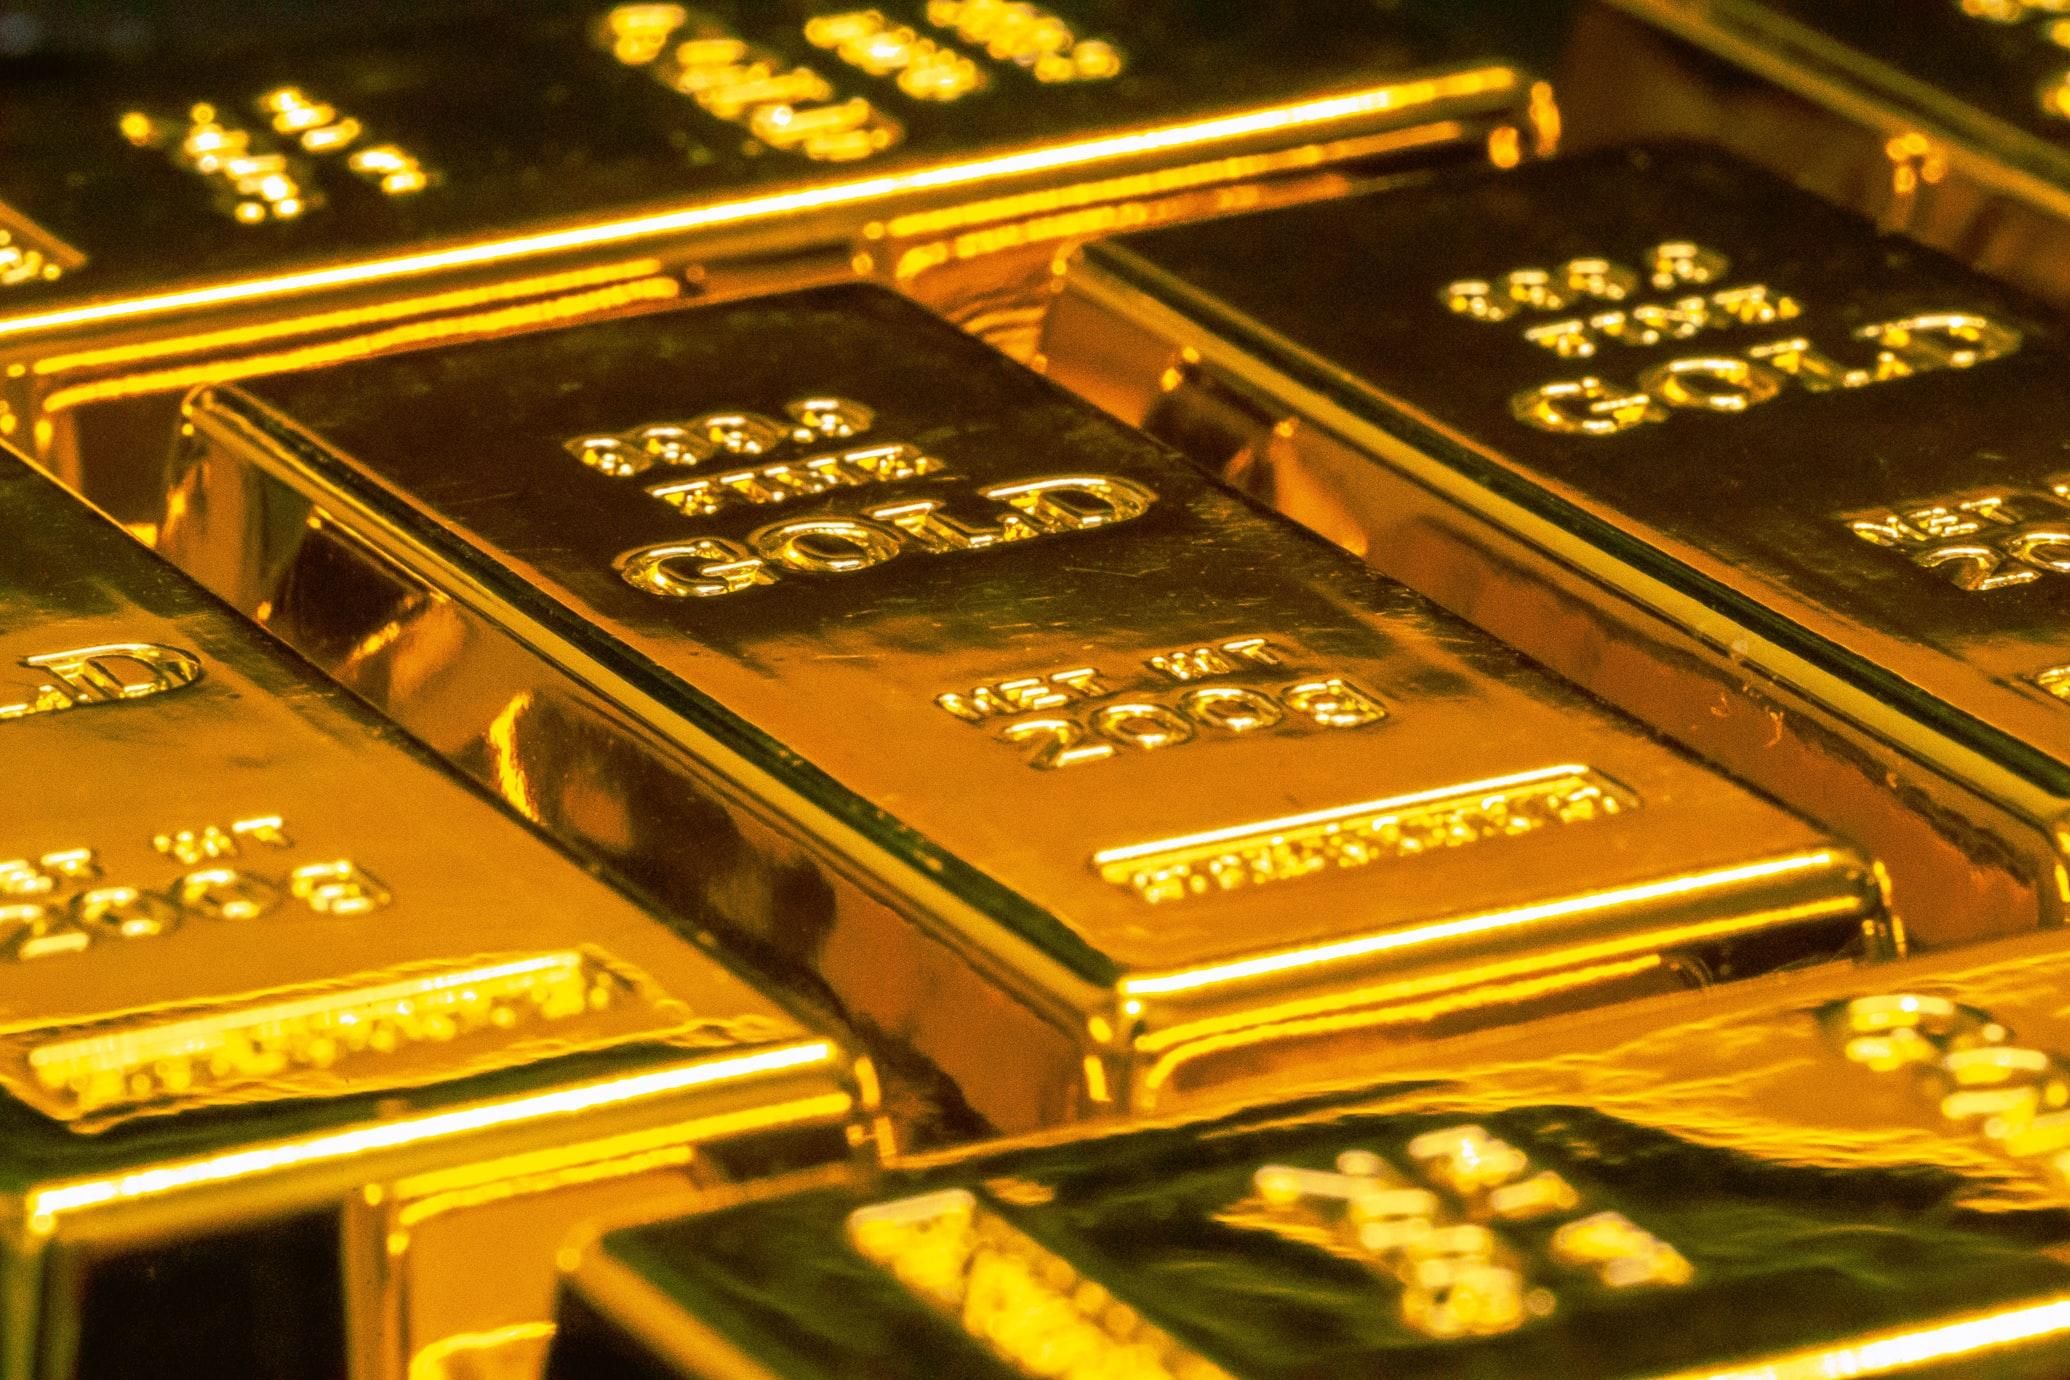 Цена золота взлетела до 8-месячного пика: как на металл влияет ситуация вокруг Украины - новости биткоин - Финансы